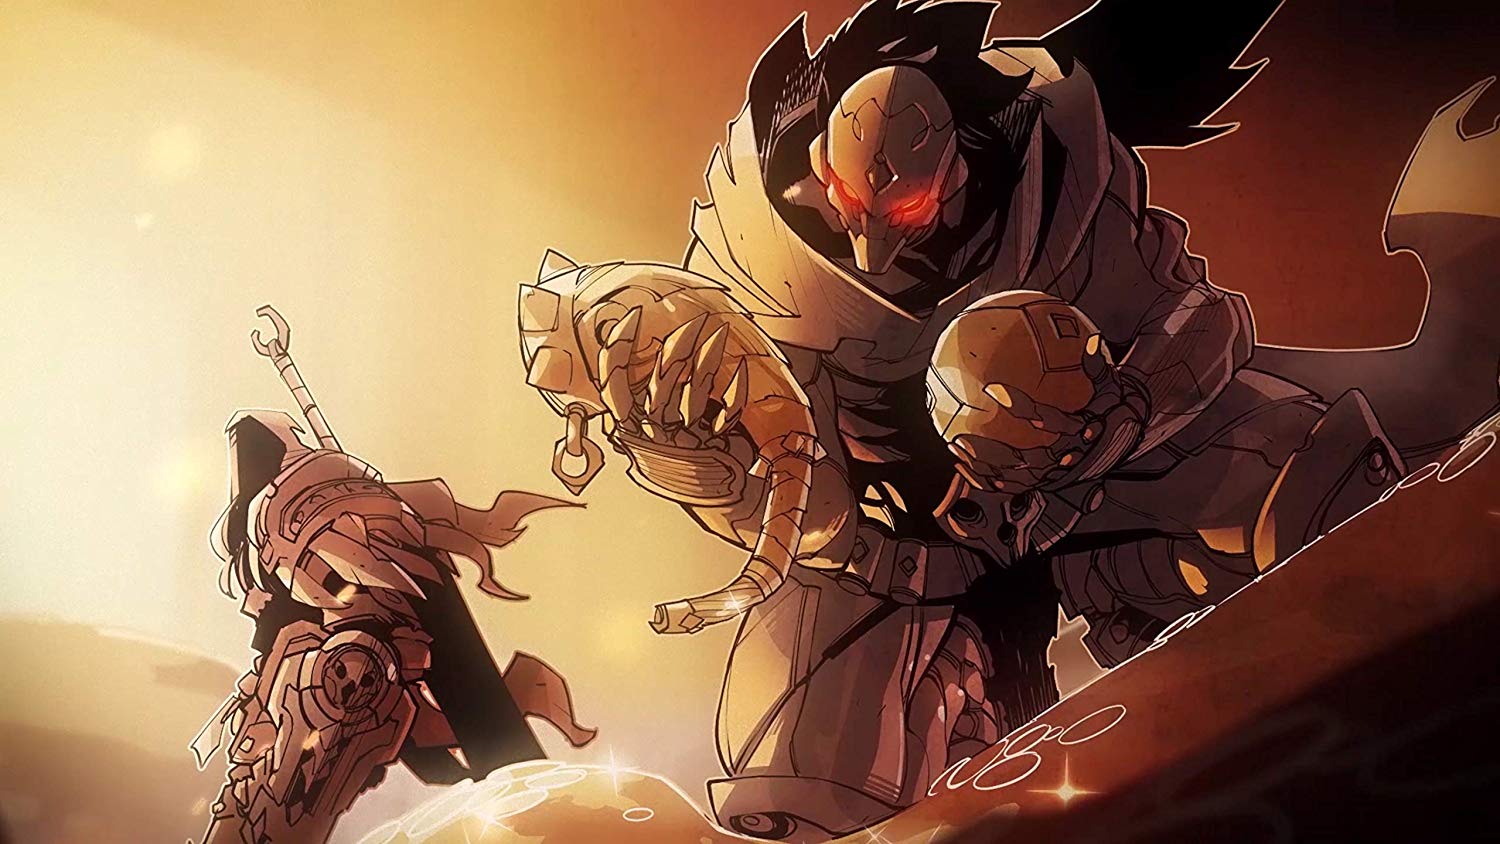 THQ ogłosił Darksiders Genesis - ponowne uruchomienie serii w duchu Diablo